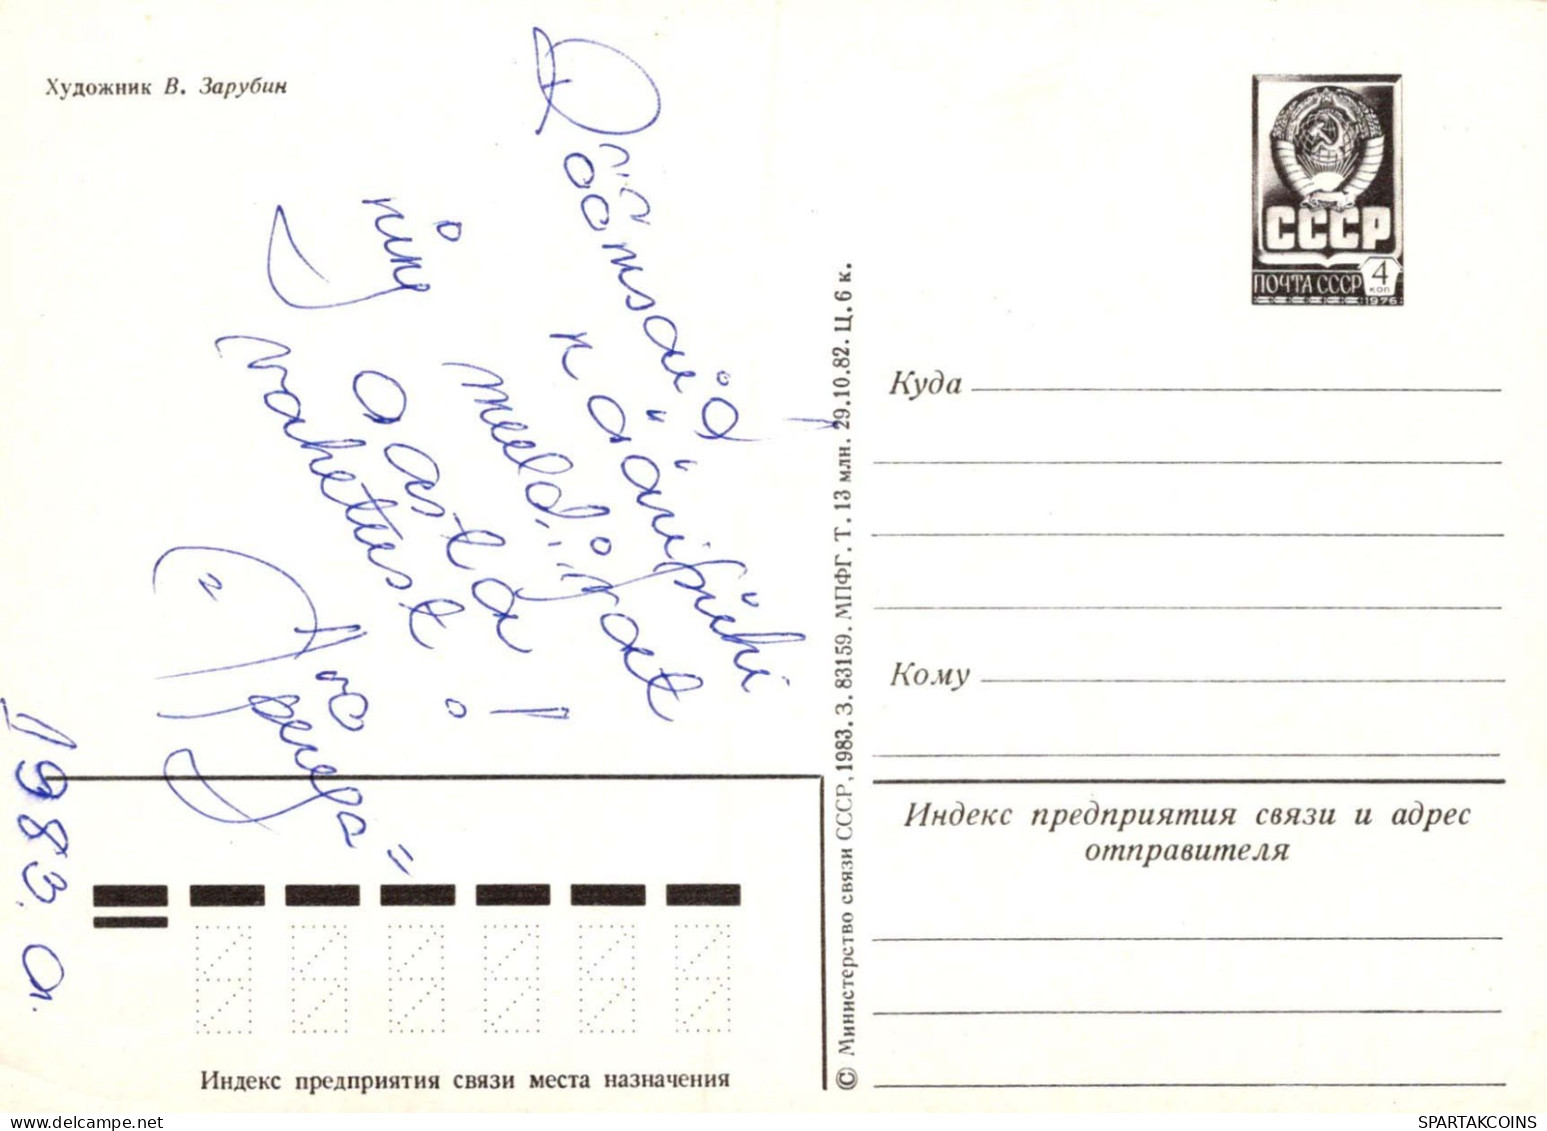 PÈRE NOËL Bonne Année Noël Vintage Carte Postale CPSM URSS #PAU339.A - Santa Claus